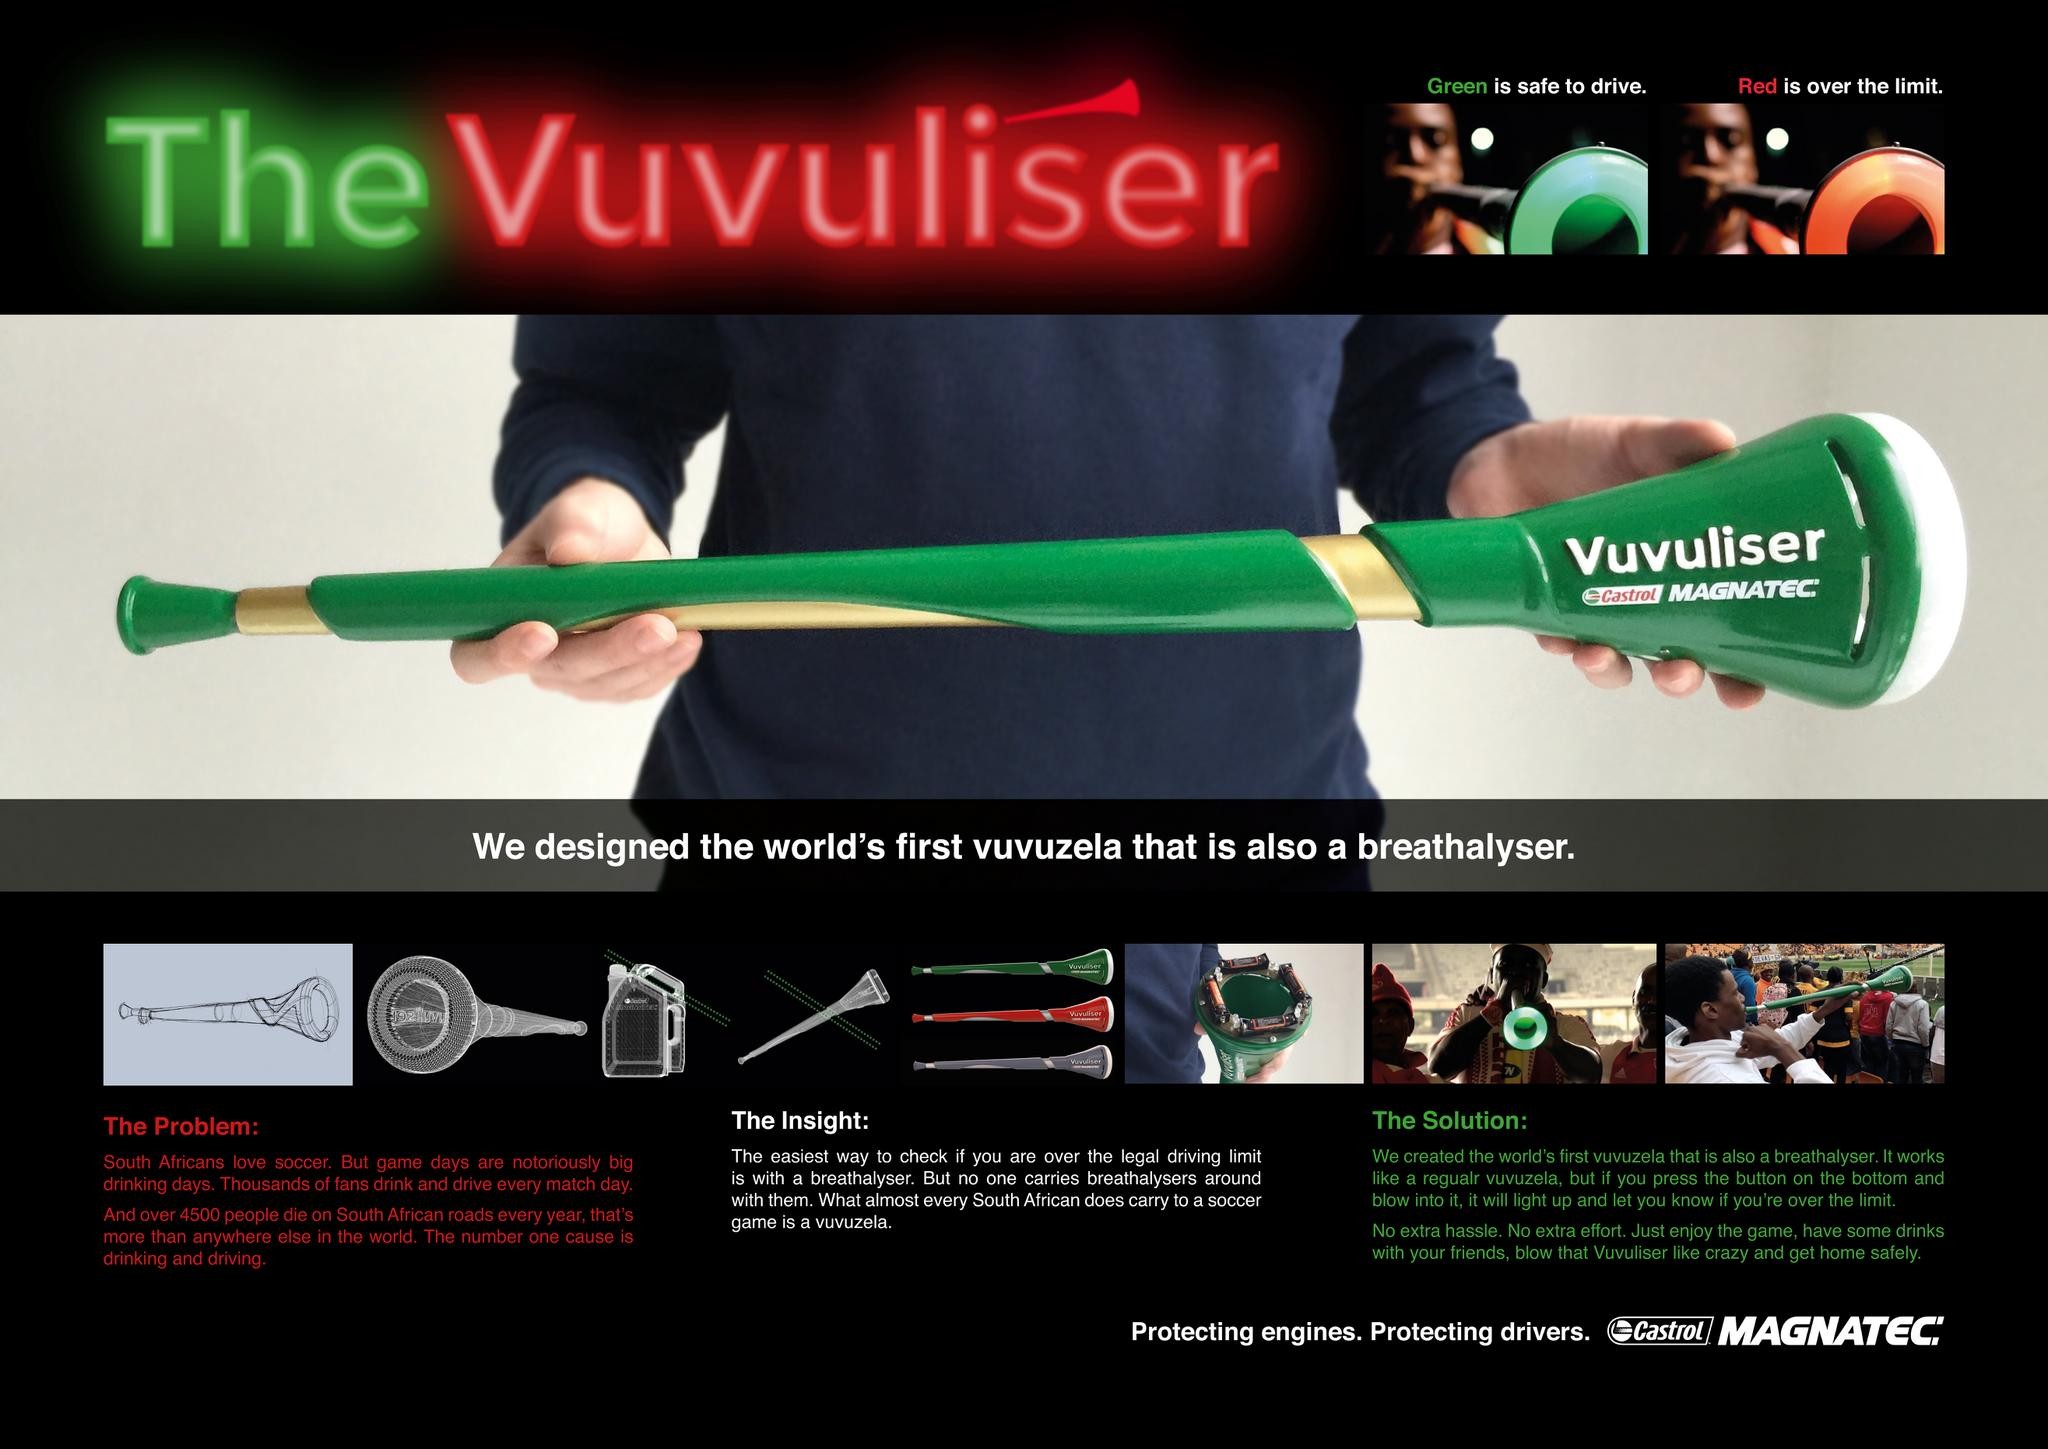 The Vuvuliser